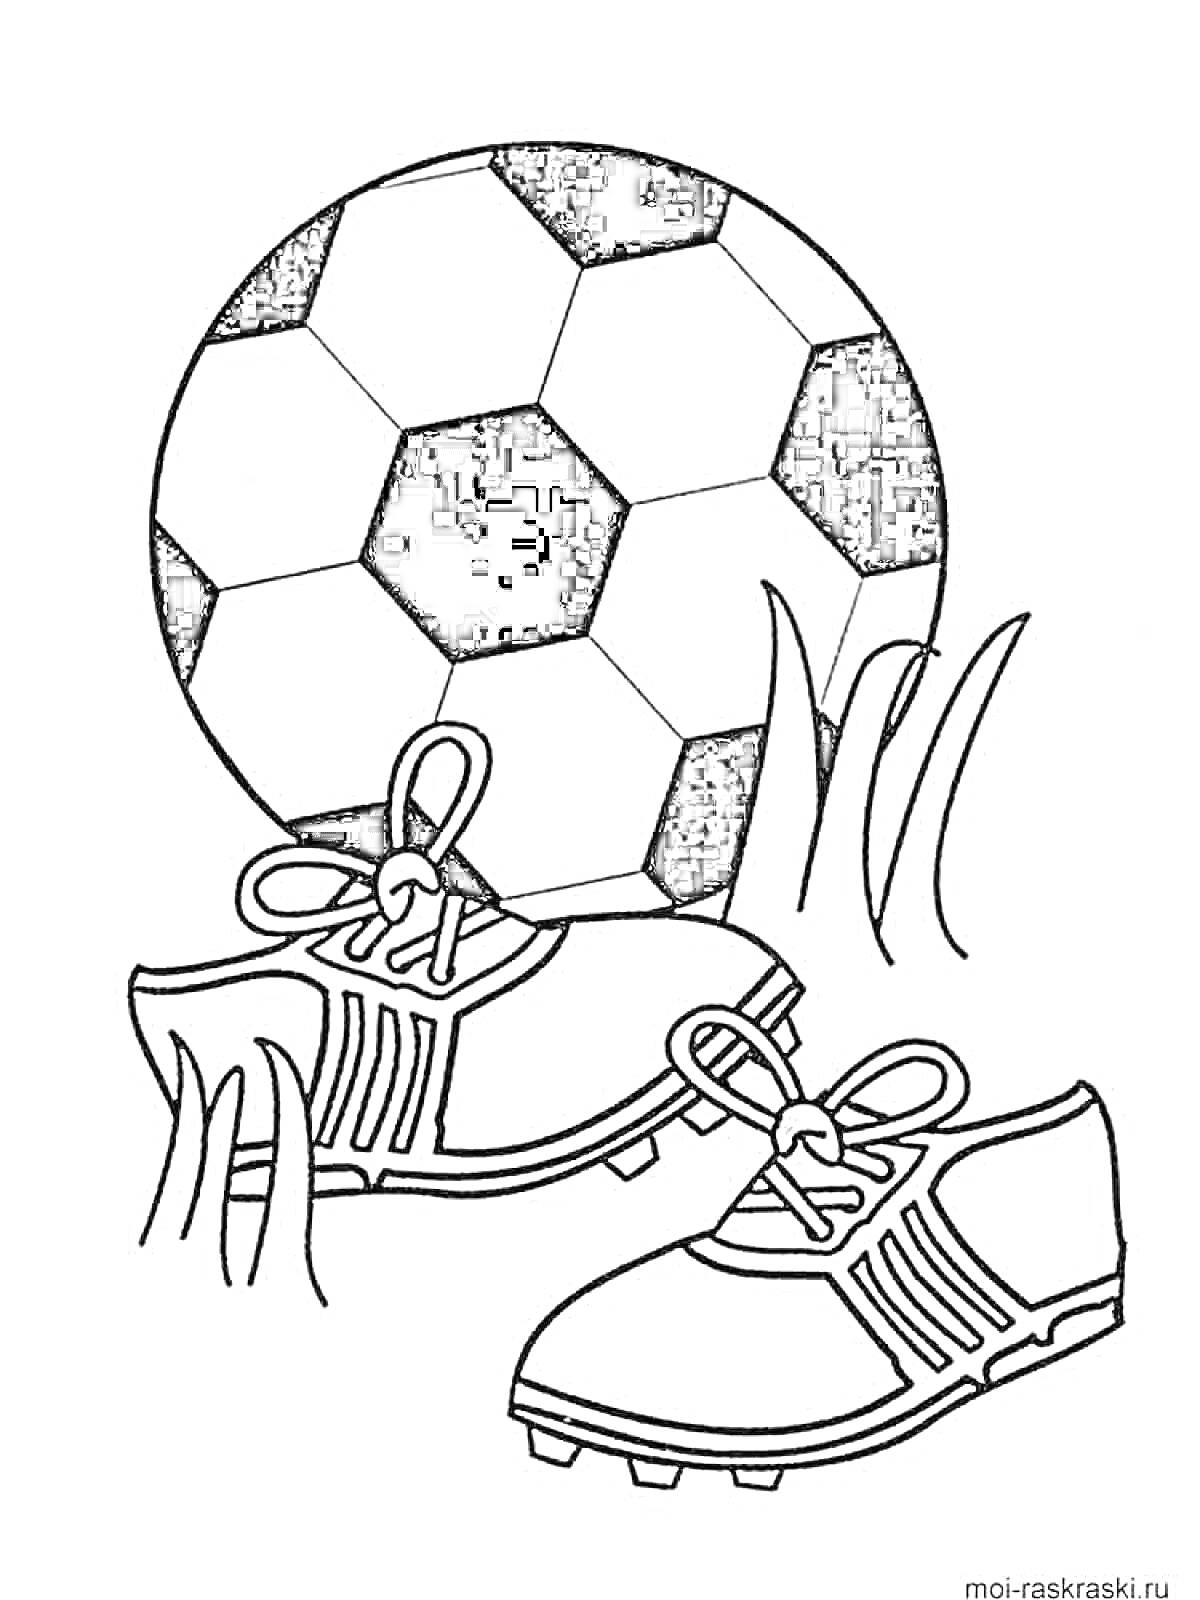 Футбольный мяч, пара футбольных бутс и трава